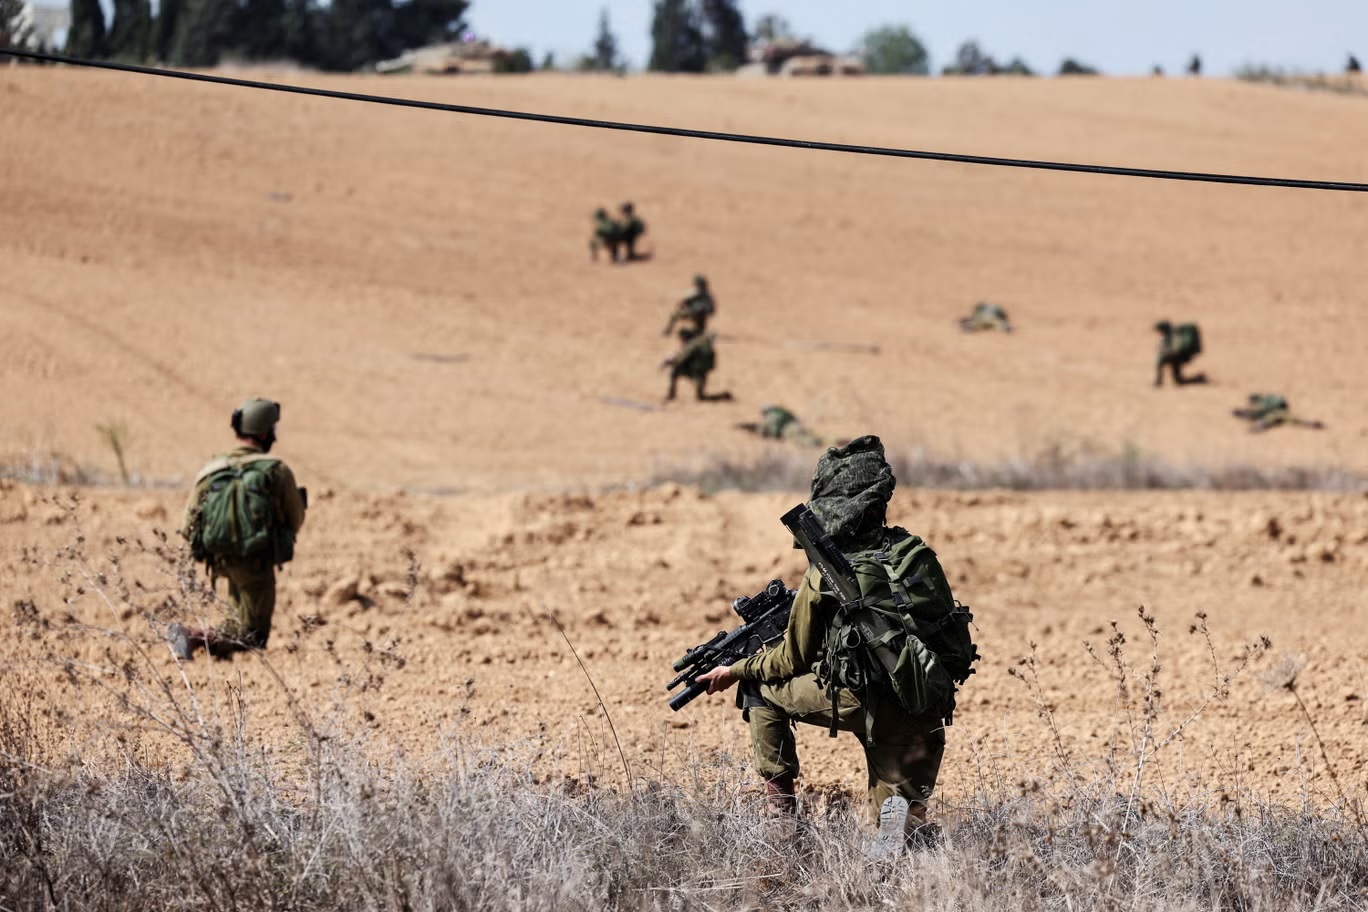 "ما تريده ’حماس‘ هو إدخال هؤلاء الجنود الإسرائيليين إلى أزقتهم حيث يمكنهم استغلال معرفتهم المحلية"، يقول خبير (رويترز)